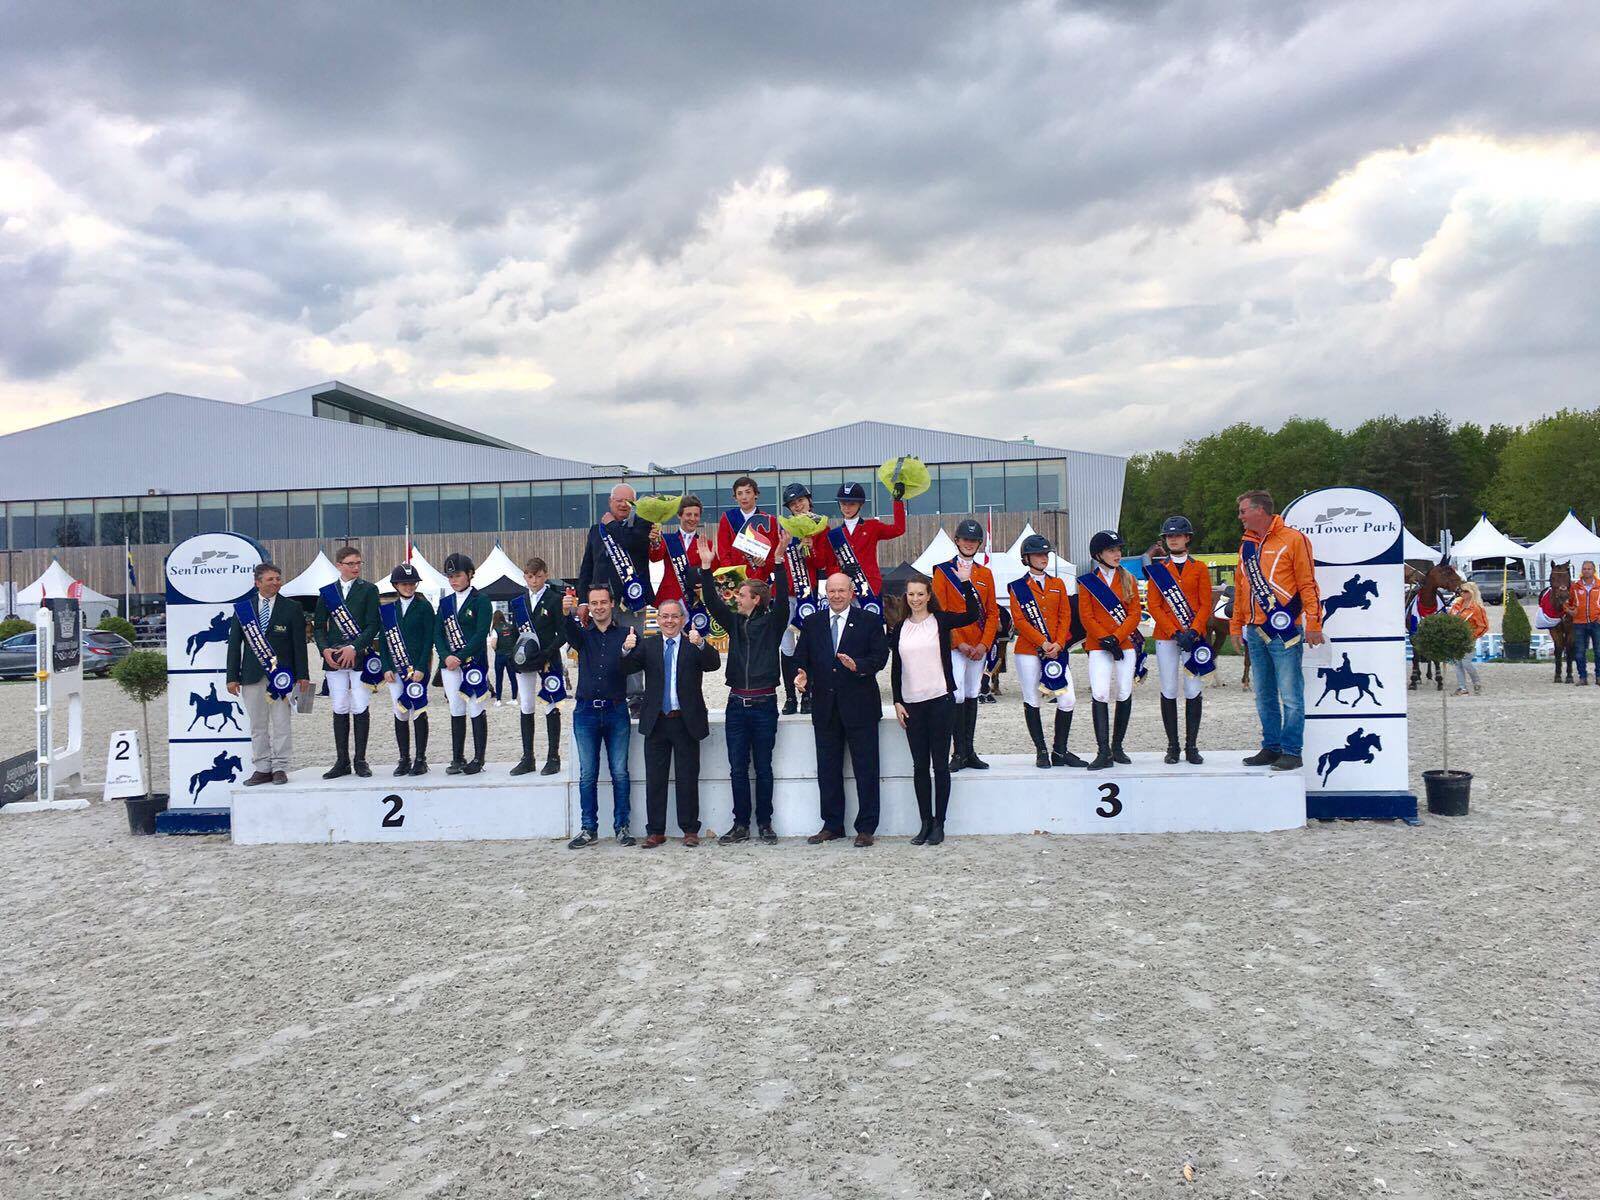 CSIO Sentower verwelkomt ruiters en publiek voor Nations Cup, Pony-, Children-, Junior- en Young Riderproeven